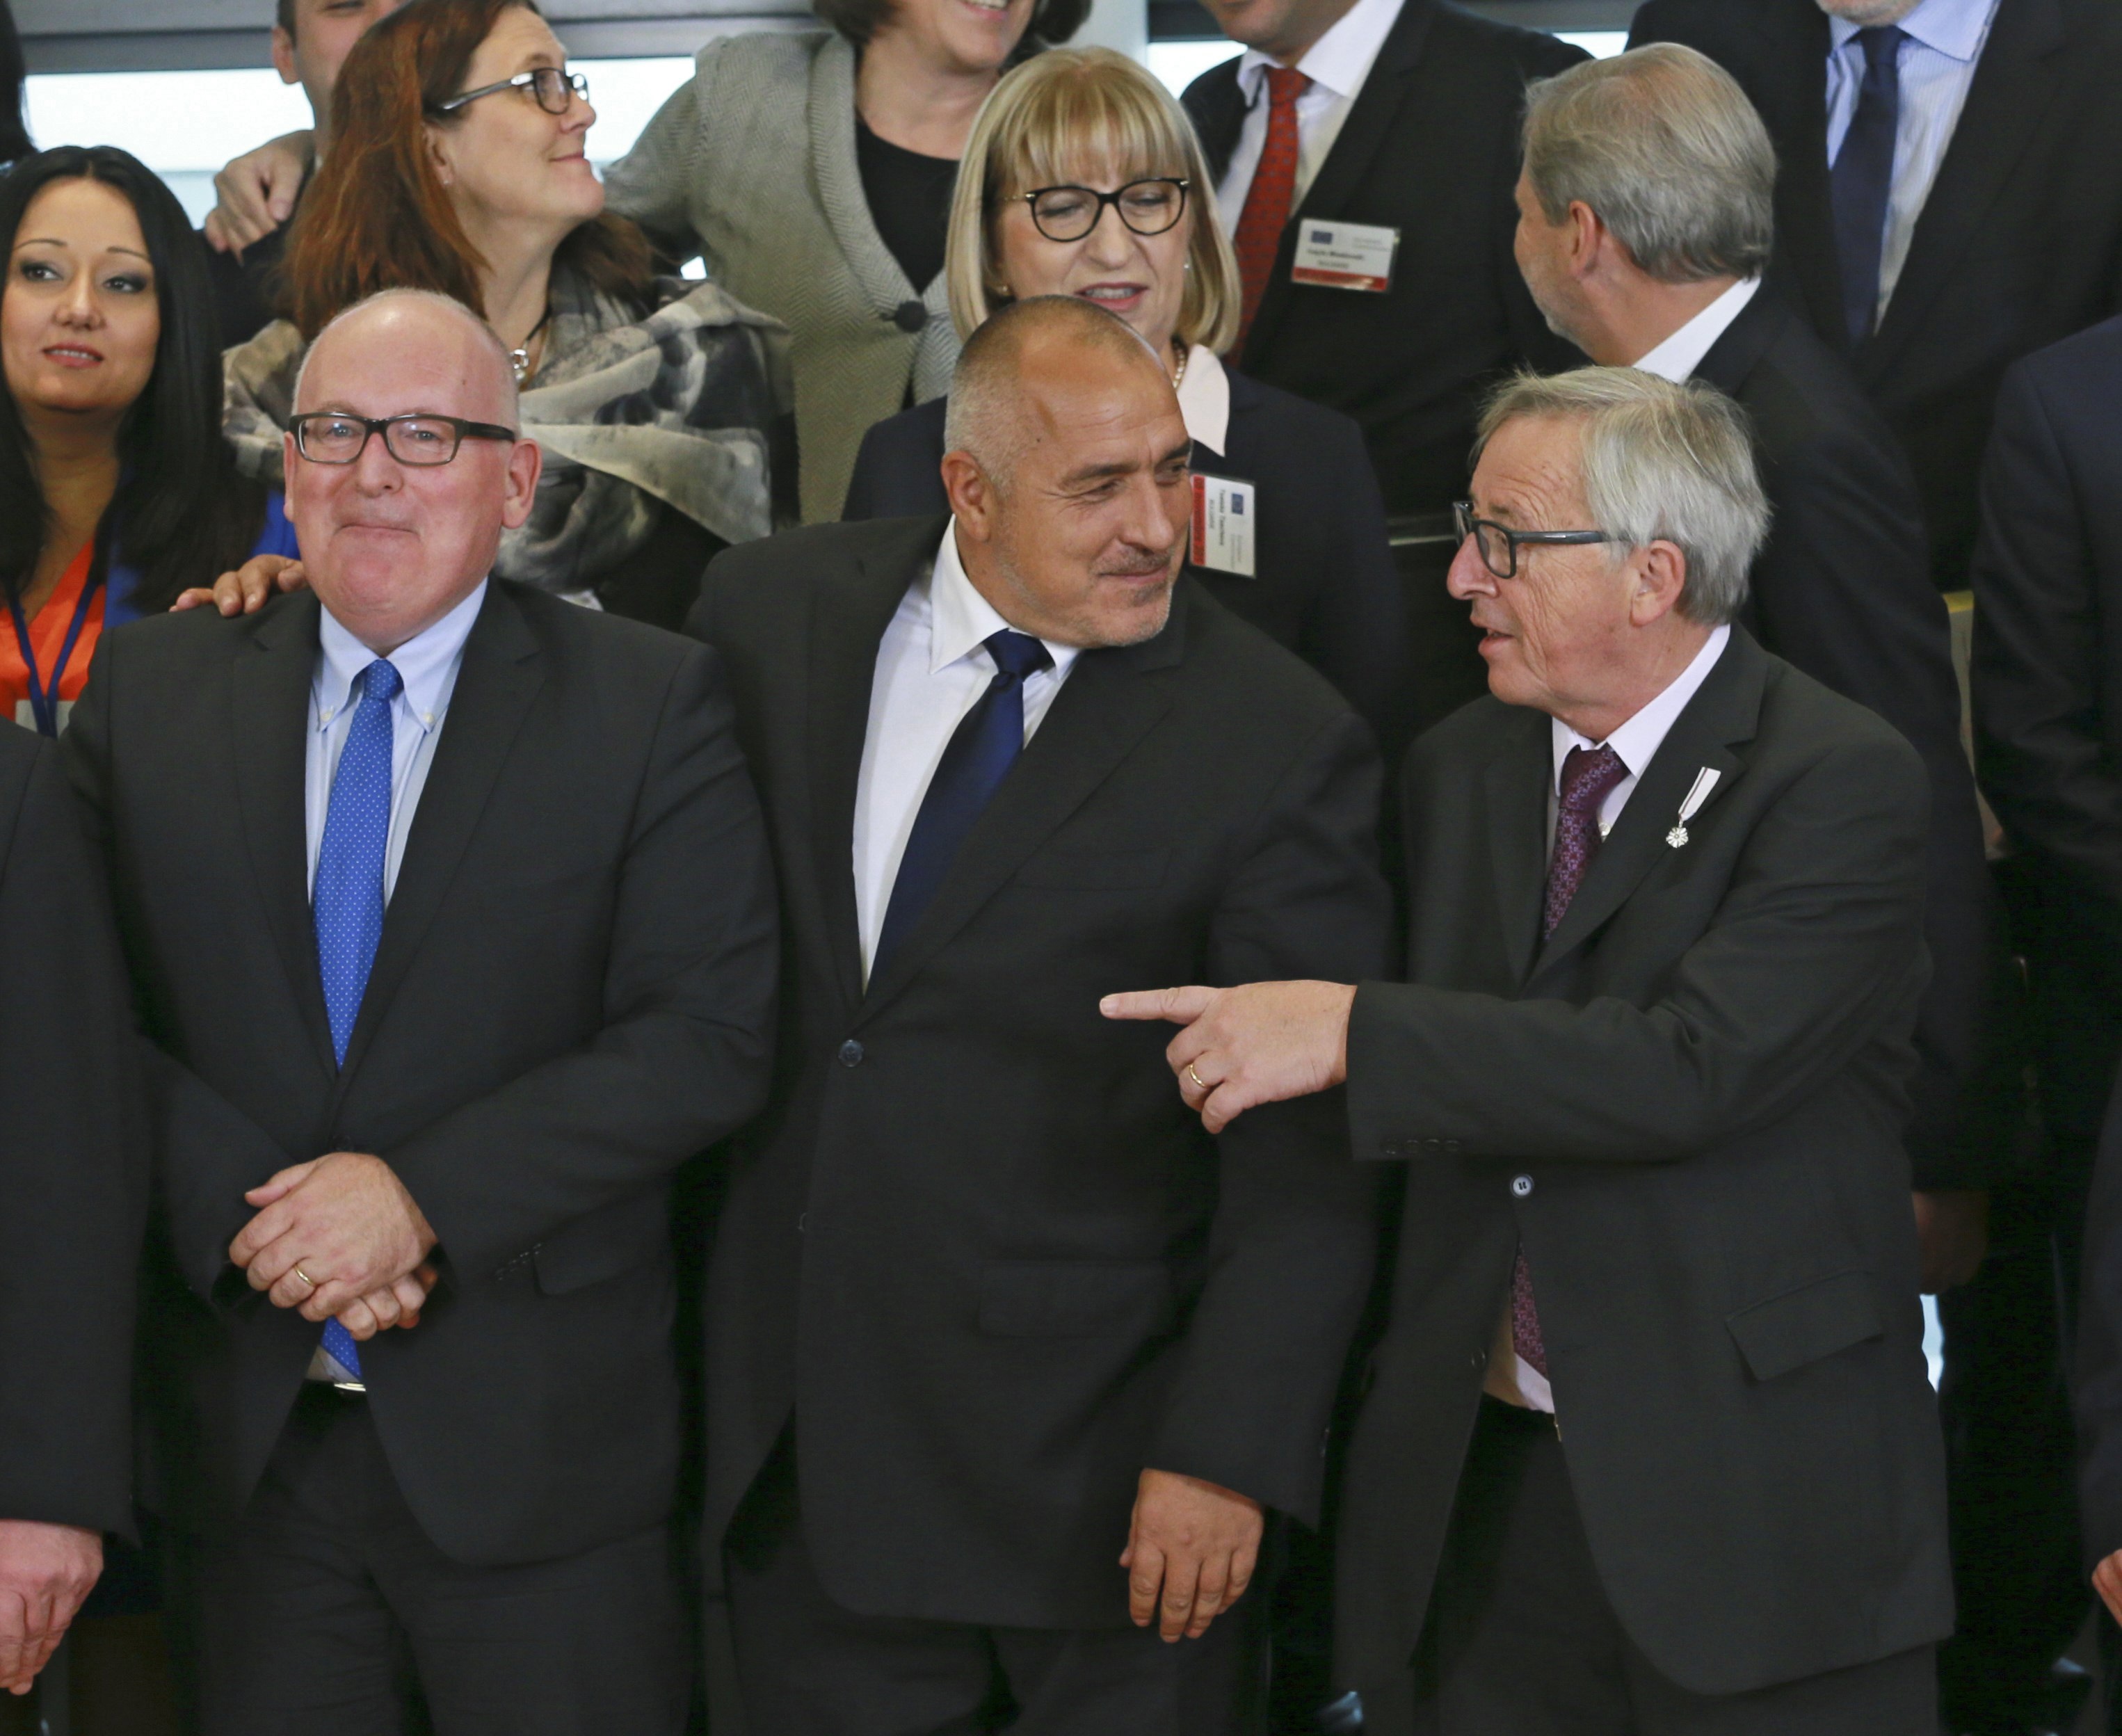 Министър-председателят Бойко Борисов и голяма част от министрите в кабинета му са в Брюксел, за срещи с еврокомисарите от съответните ресори преди Българското председателство на Съвета на Европейския съюз през 2018 г. Премиерът се срещна с председателя на Европейската комисия Жан-Клод Юнкер, като двамата демонстрираха топли чувства един към друг